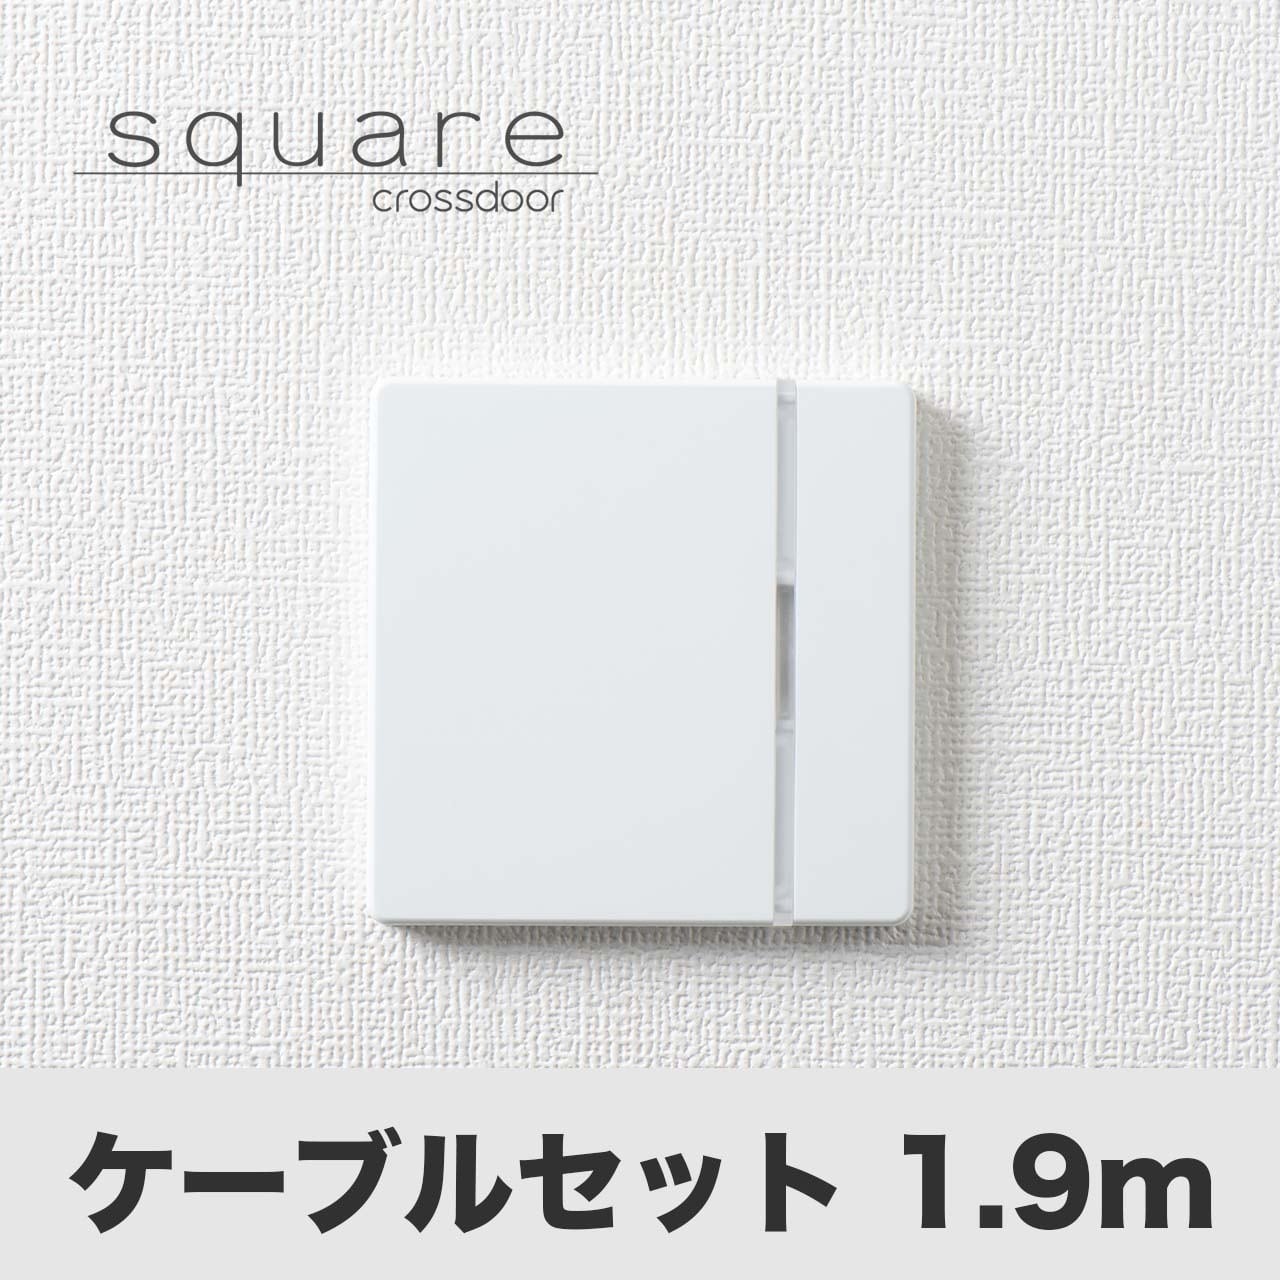 Crossdoor square（型番：CDB-02）ケーブルセット1.9m